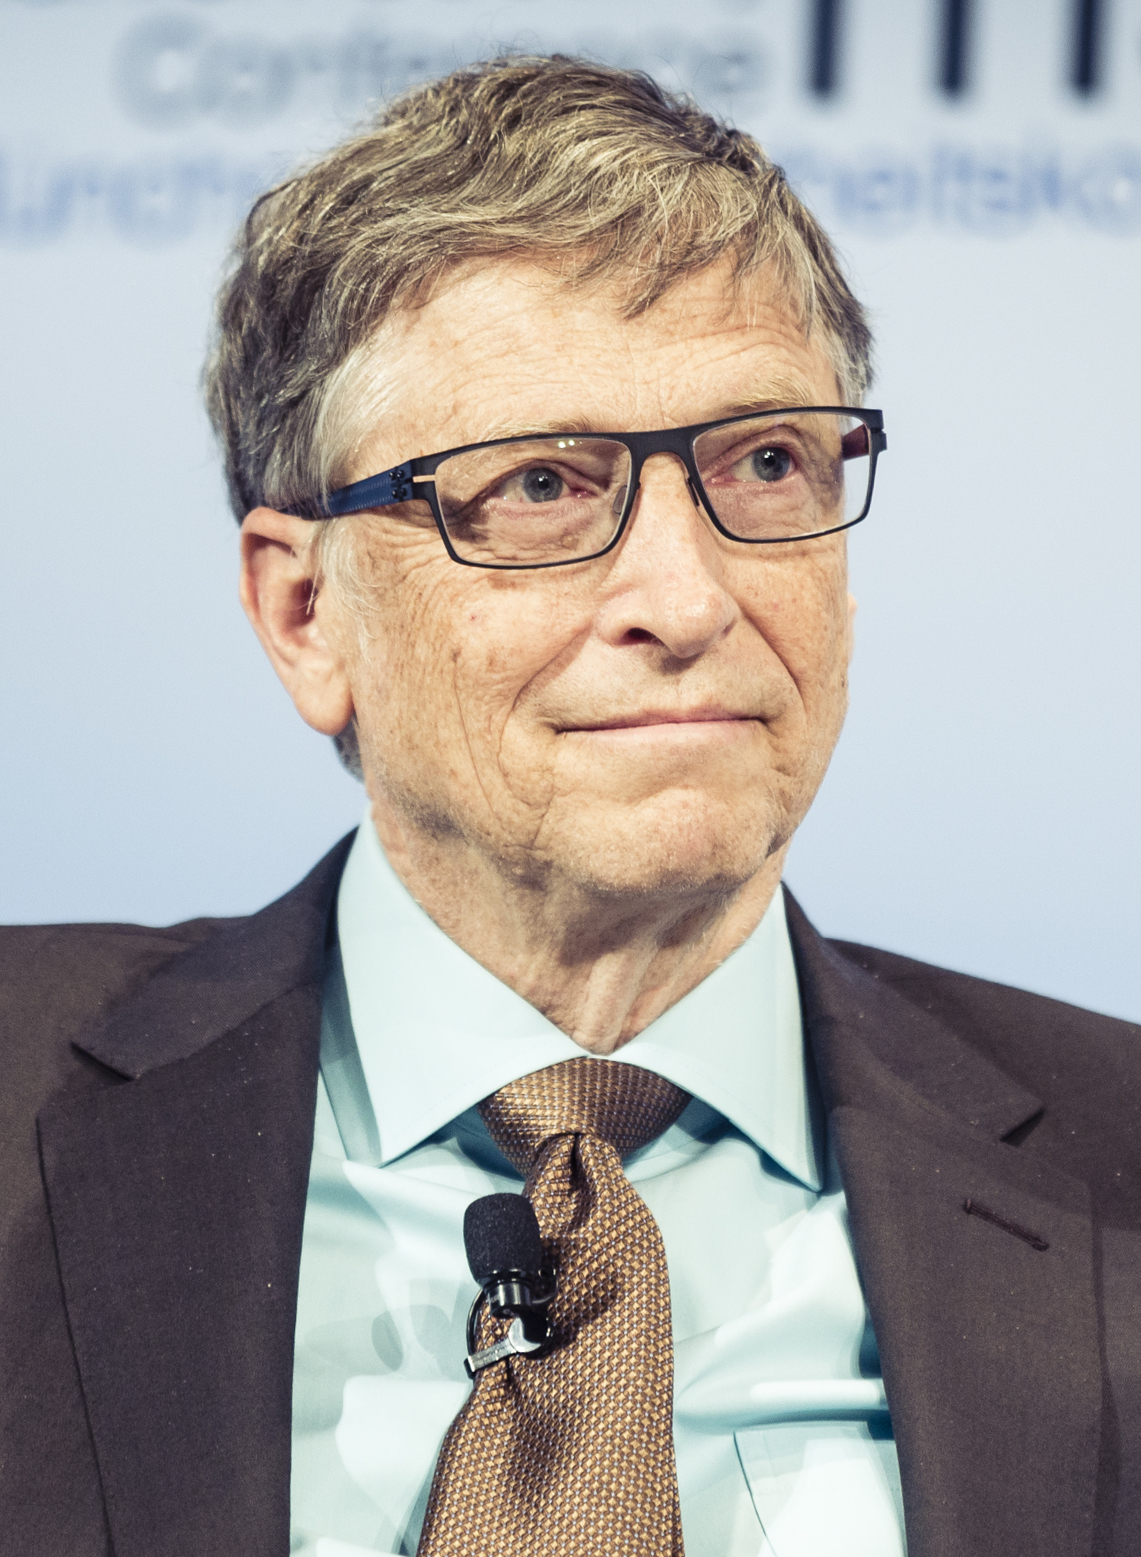 Bill Gates thuộc trong top 4 người giàu nhất thế giới với tổng tài sản 114 tỷ USD